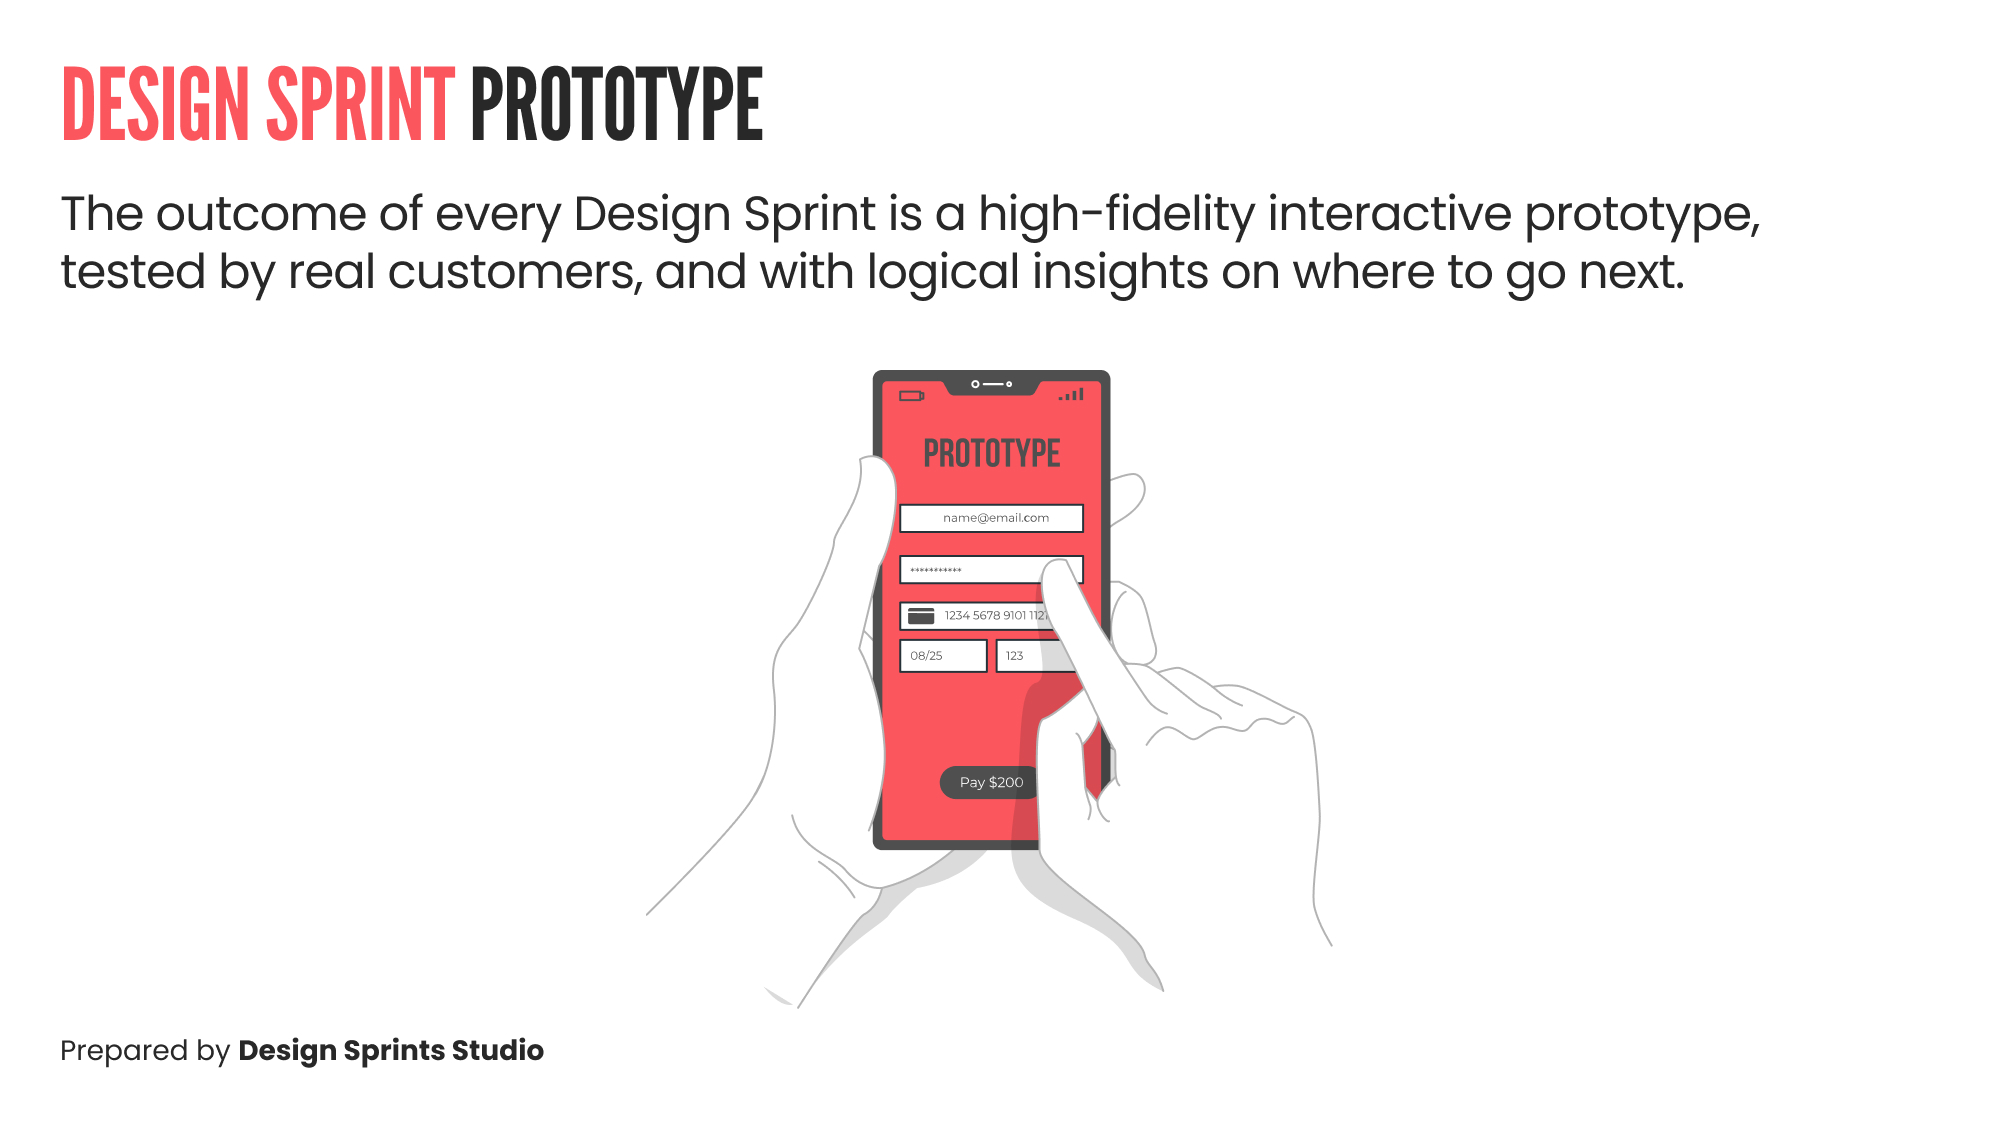 Design Sprint Prototype